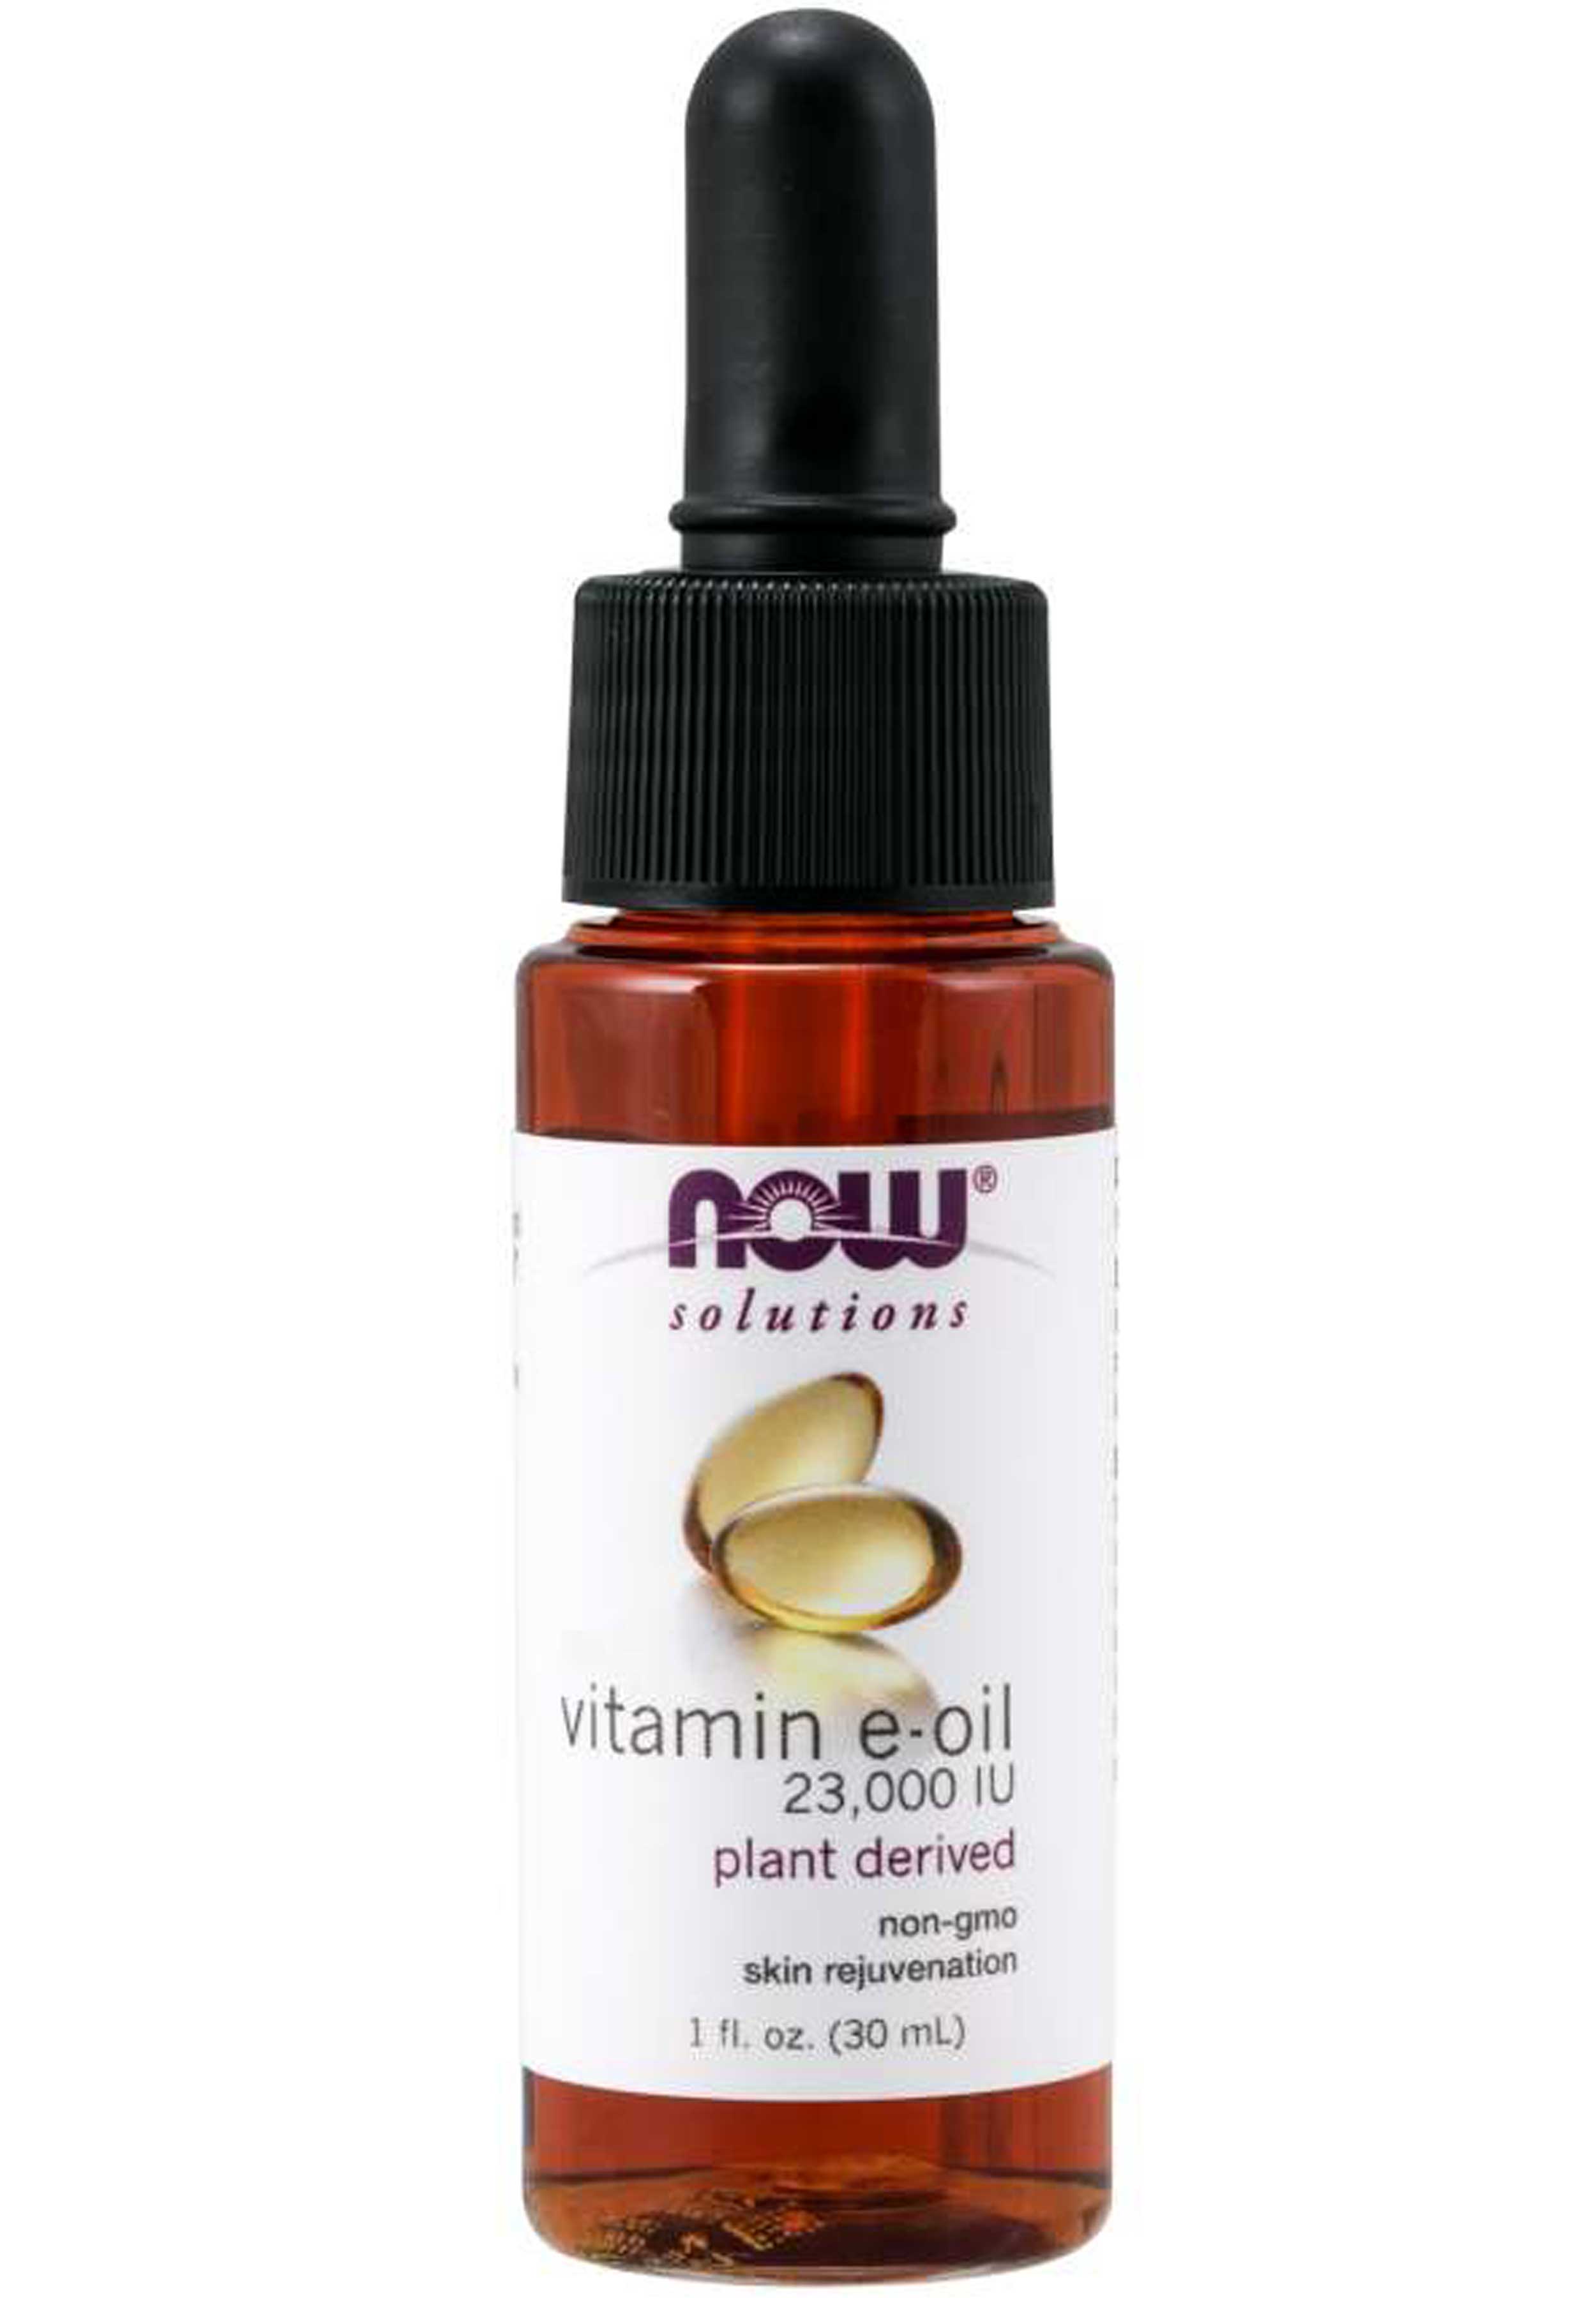 NOW Solutions Vitamin E Oil 23,000 IU